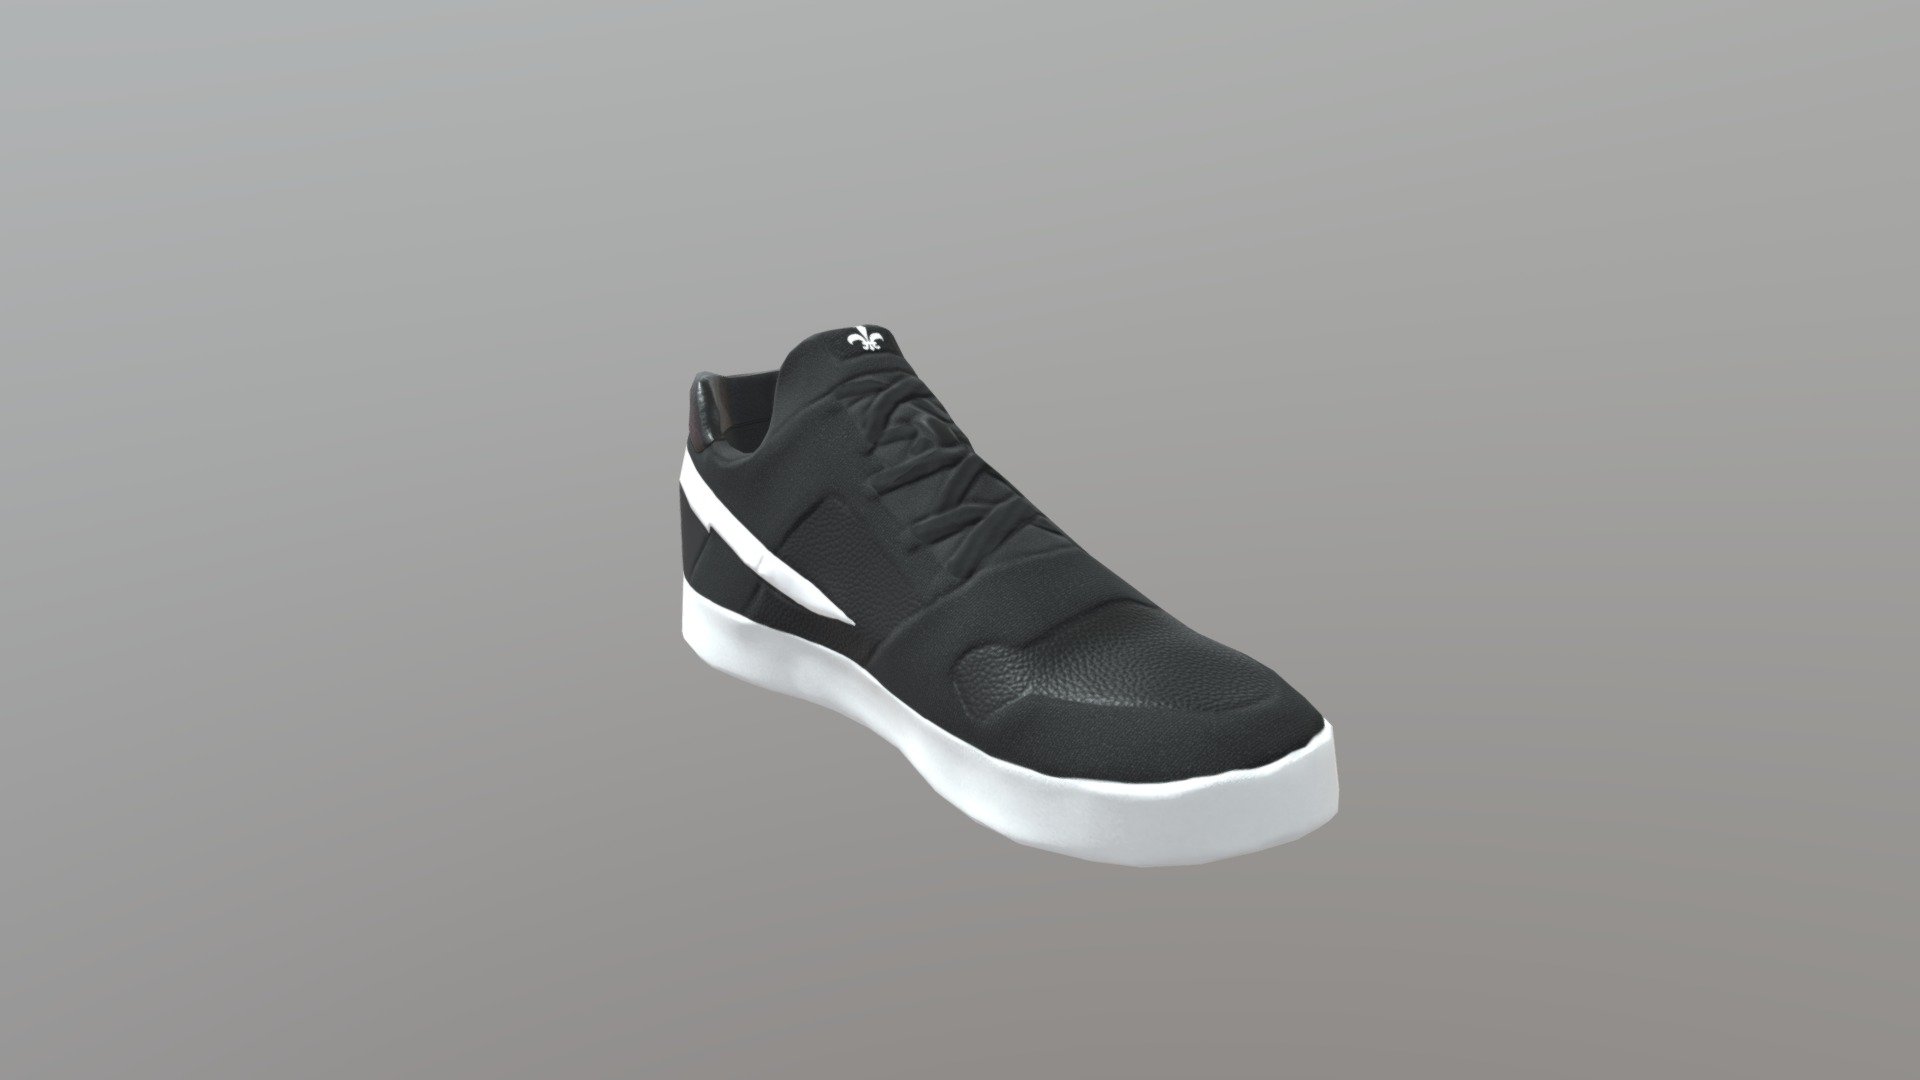 Based on Nike Desing - Skate Shoes - 3D model by Jogetsu 3d model